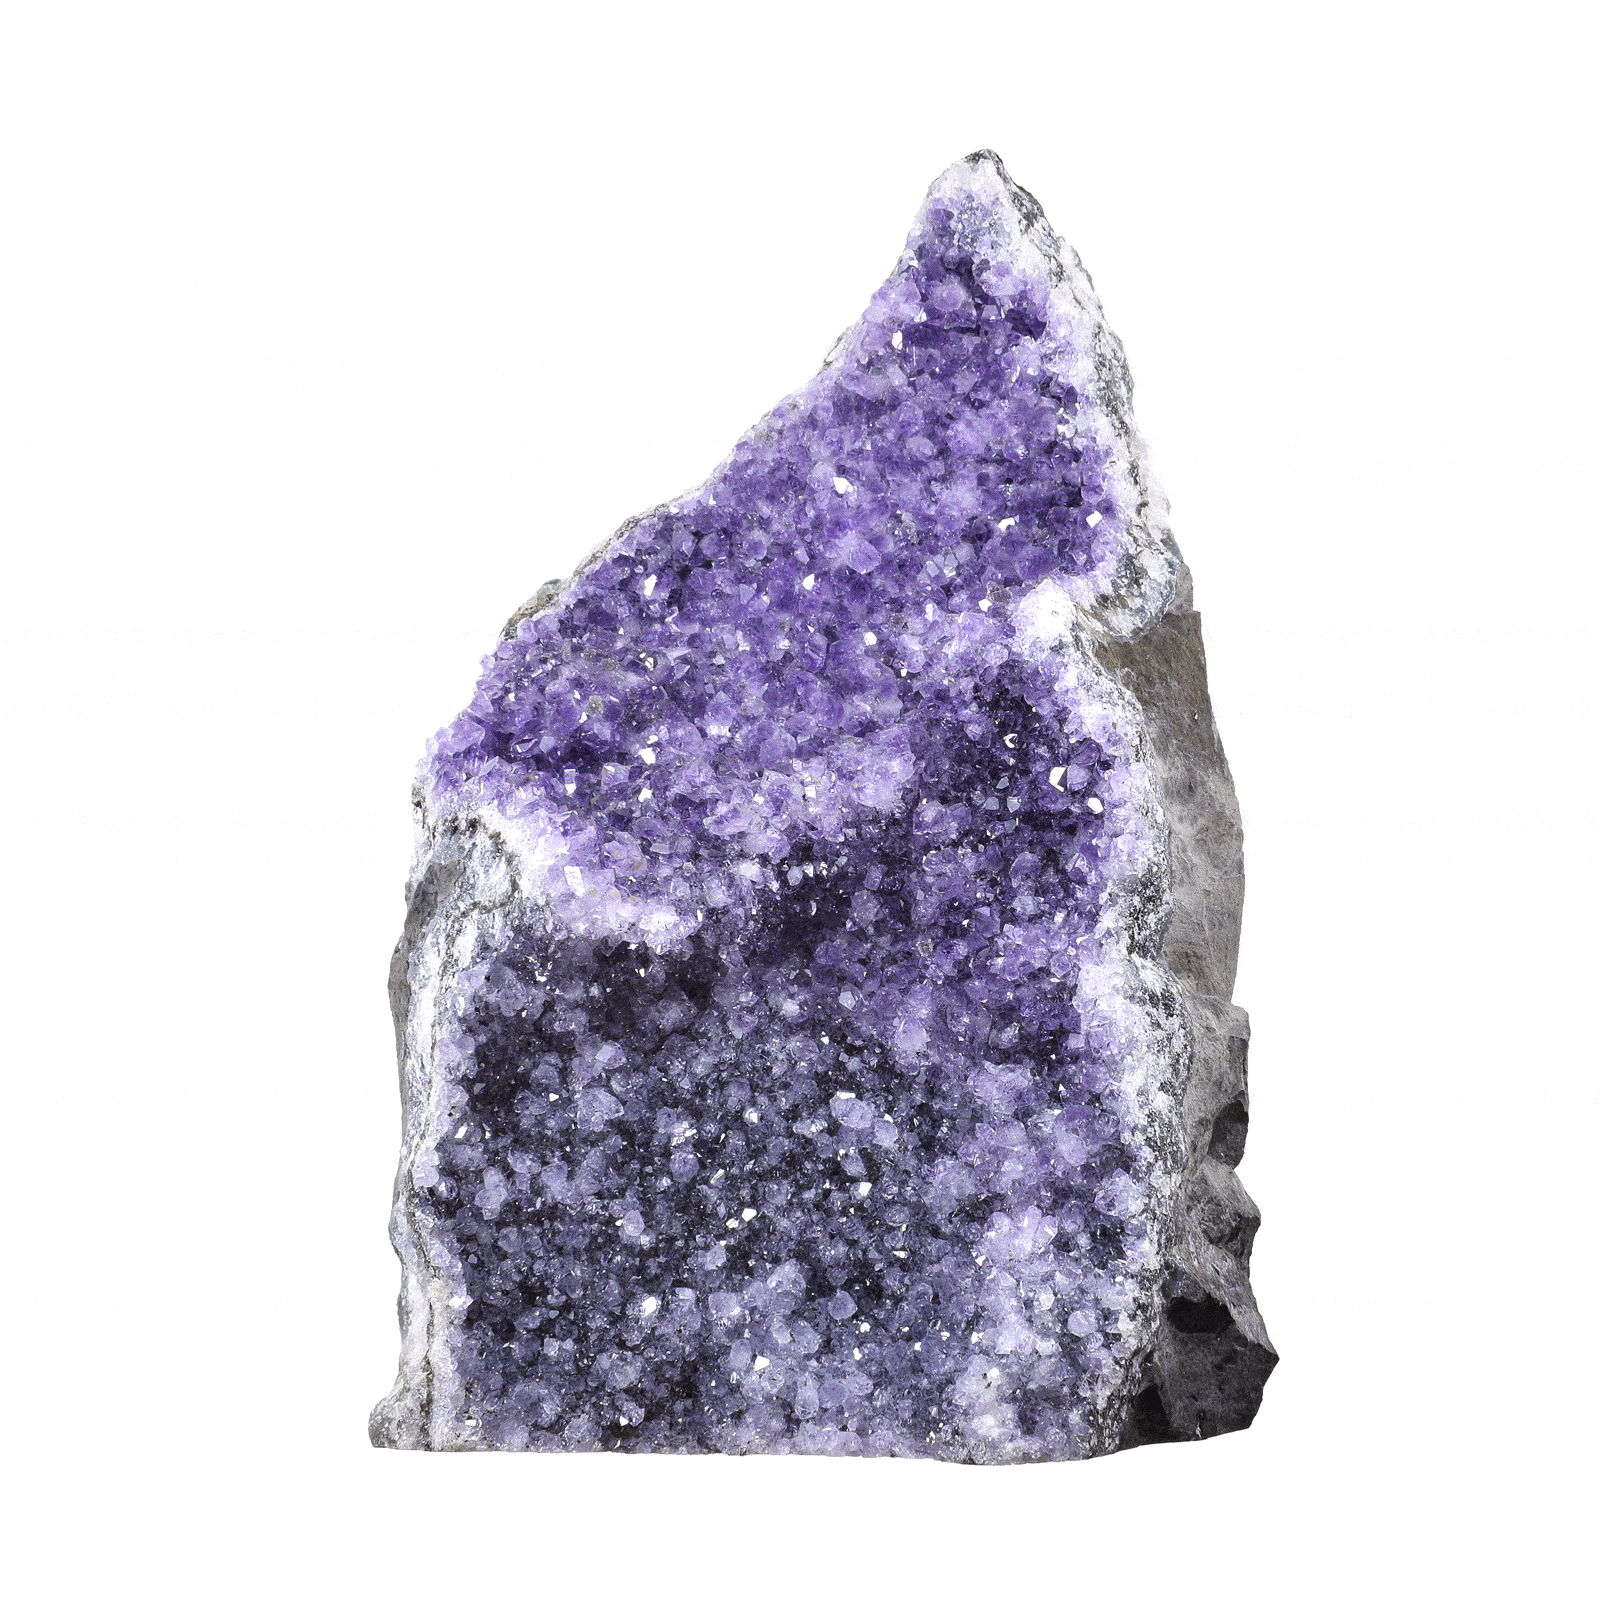 Ακατέργαστο κομμάτι φυσικής πέτρας αμέθυστου με ύψος 24cm. Αγοράστε online shop.